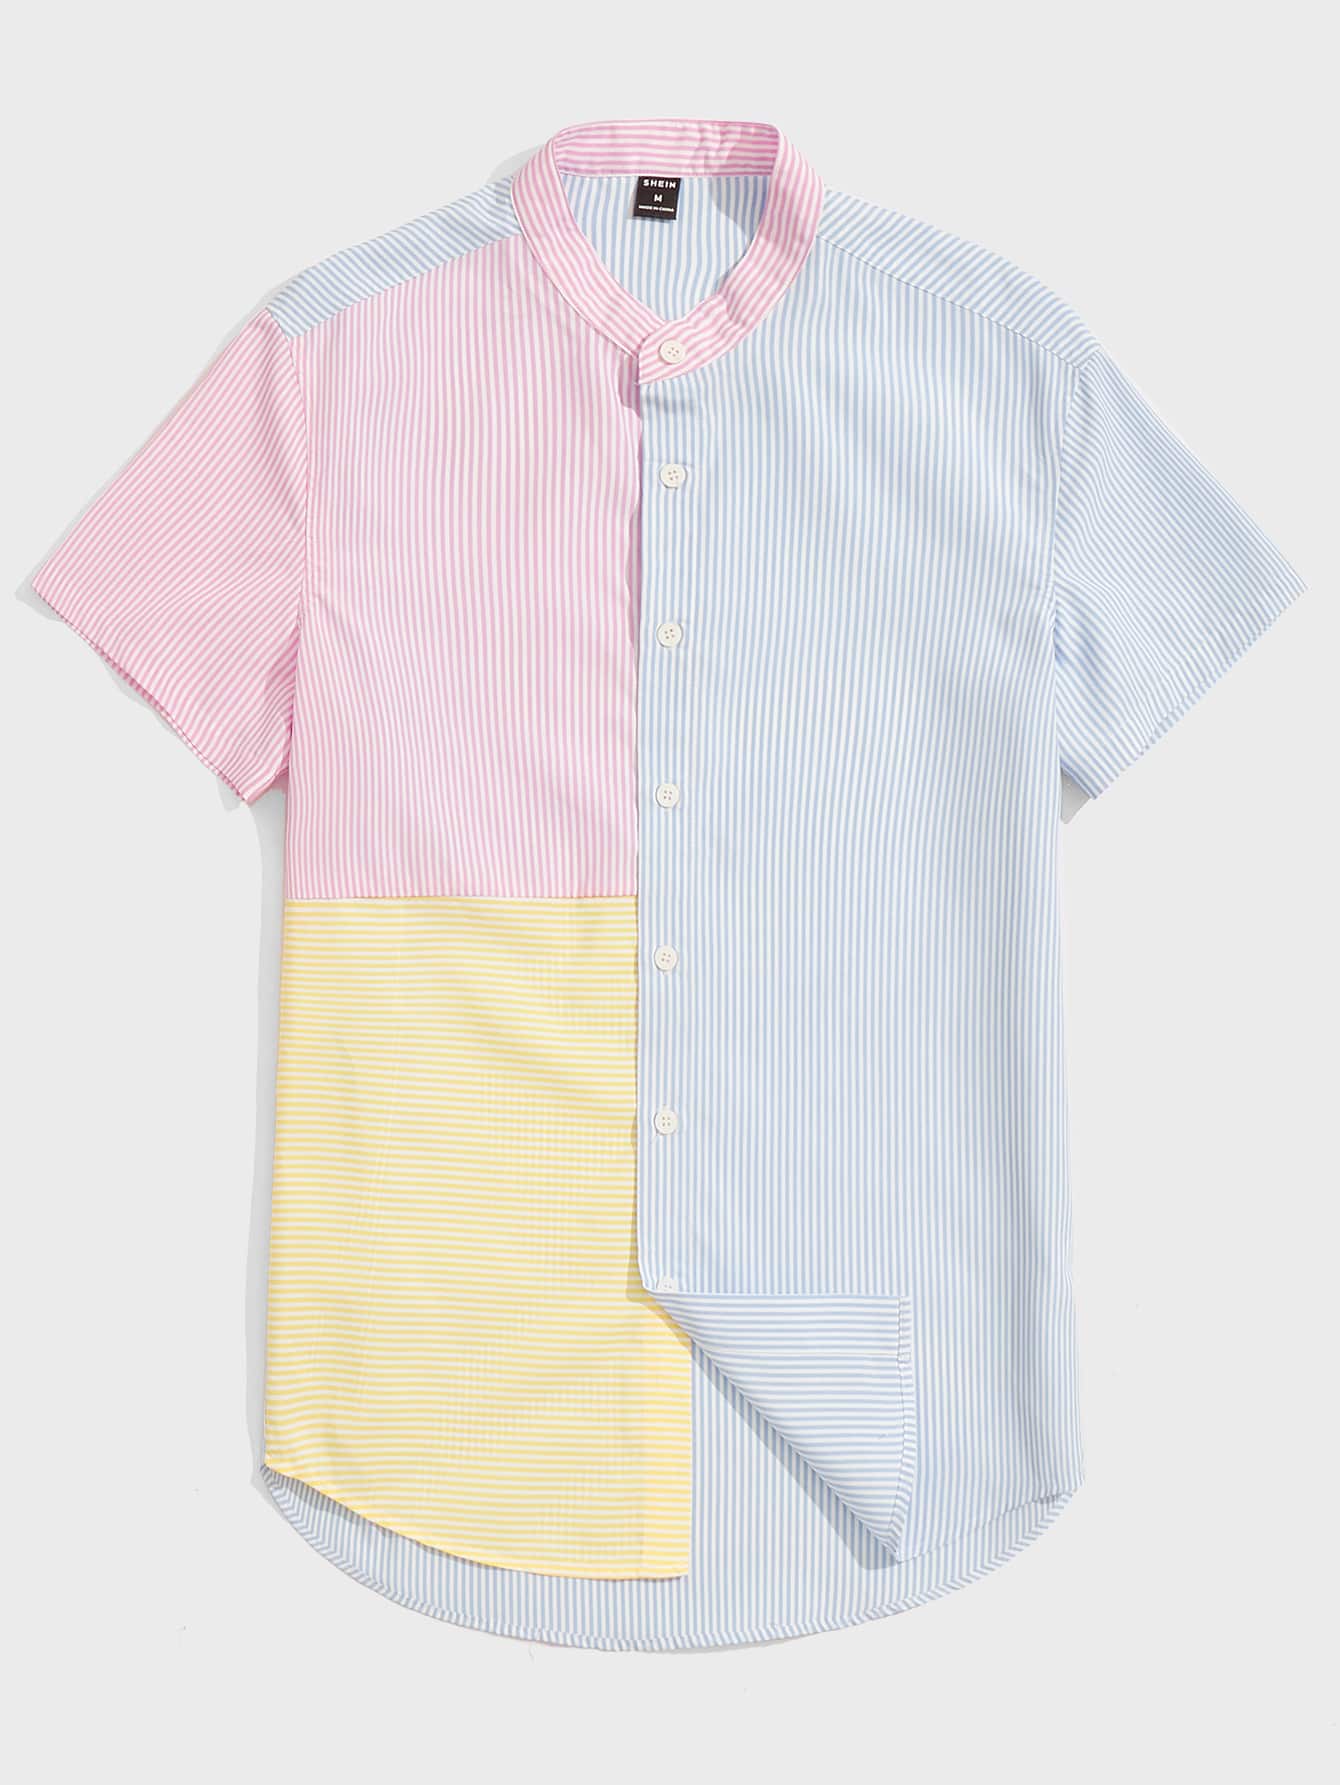 Мужская рубашка в полоску с воротником-стойкой Manfinity Hypemode в стиле пэчворк, многоцветный